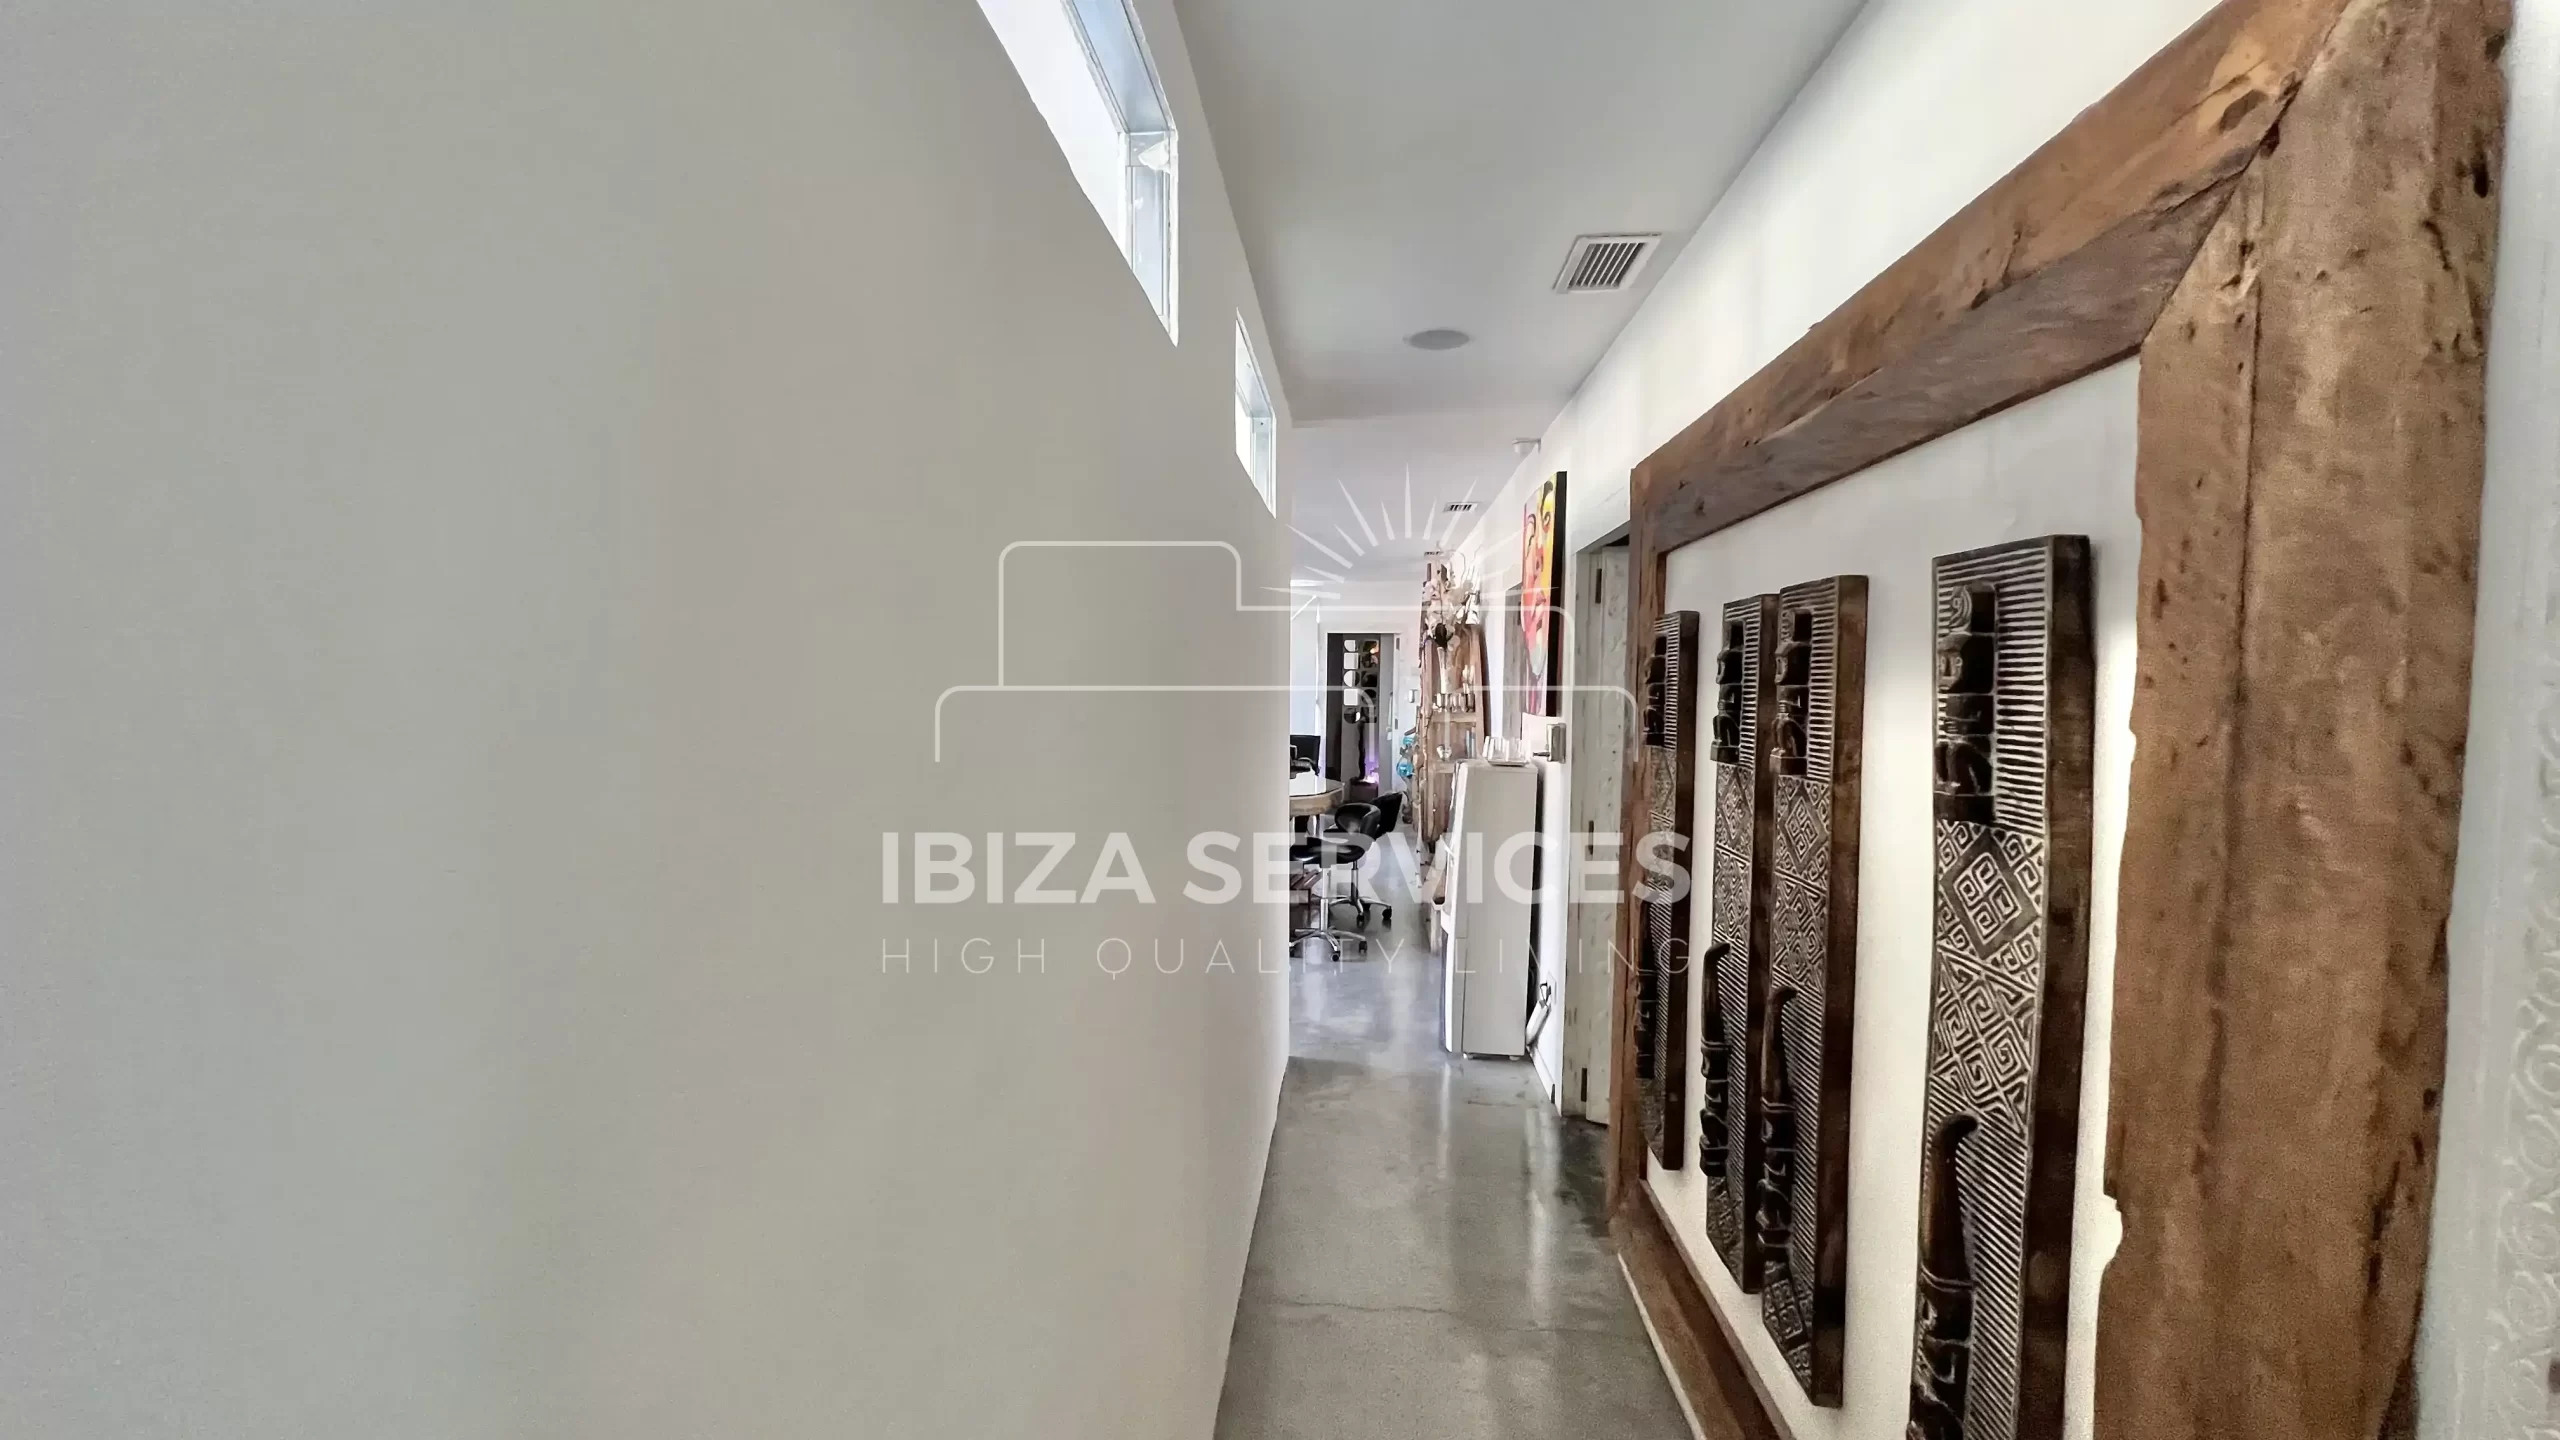 Espacio Comercial Excepcional en Marina Botafoch, Ibiza: Una Oportunidad de Inversión Única